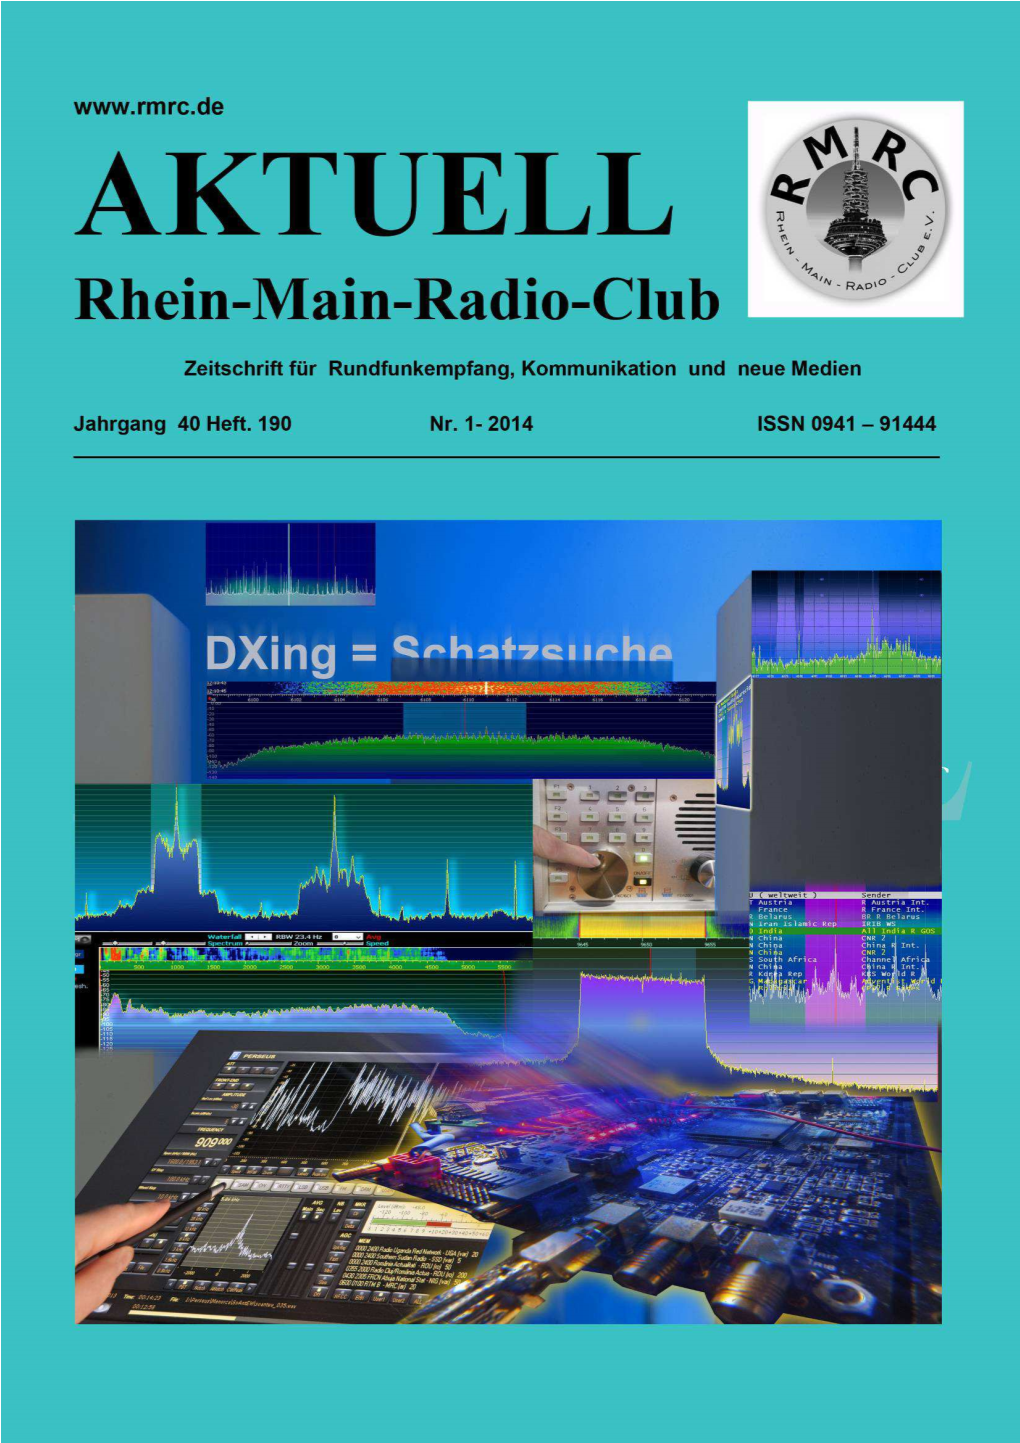 RMRC-AKTUELL 1/2014 Editorial Redaktion: Harald Gabler